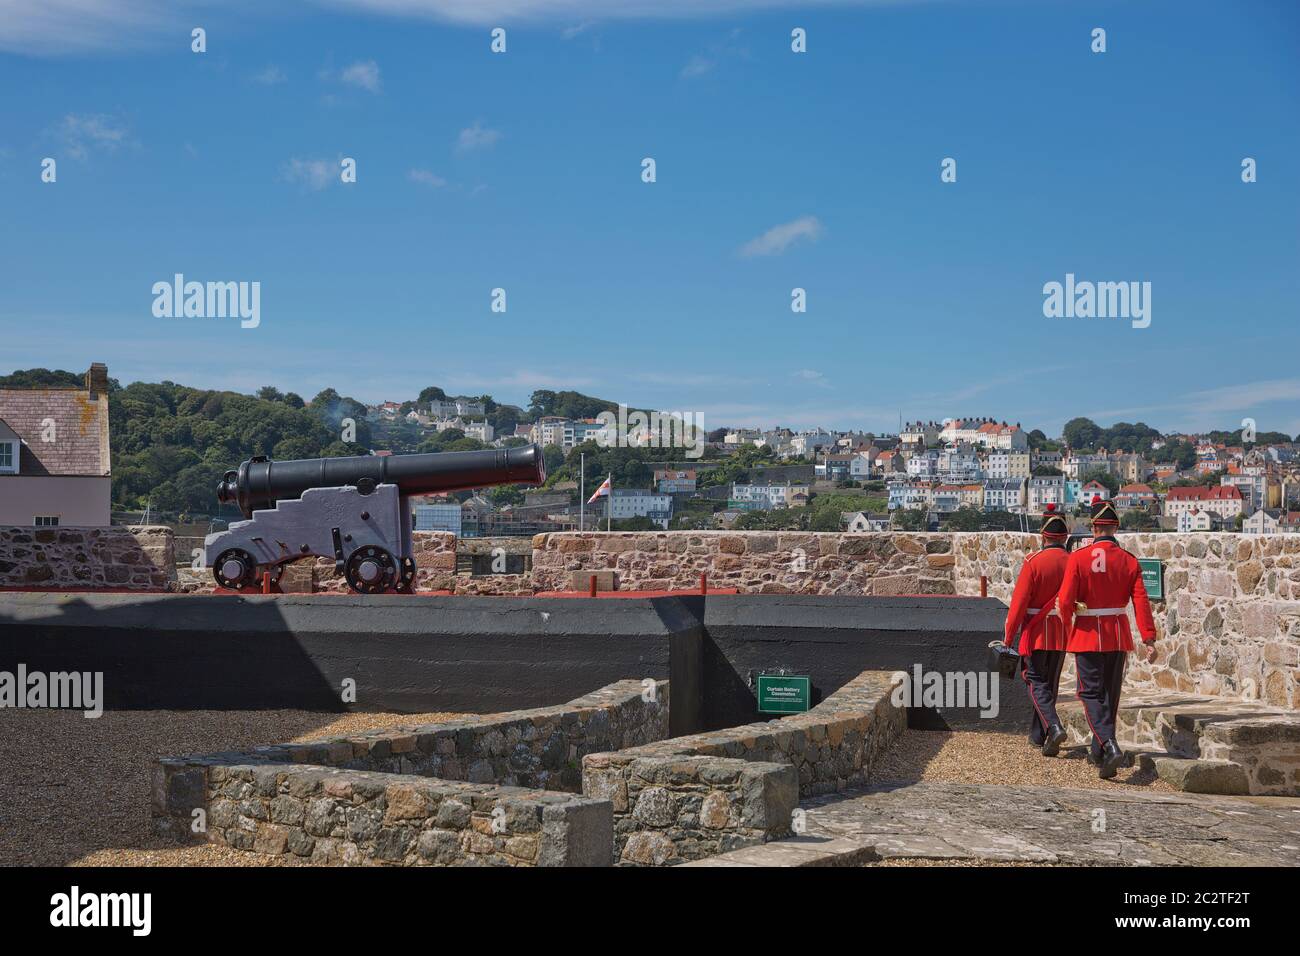 Guardie sparare la pistola di mezzogiorno giorno a Castle Cornet, San Pietro Porto, Guernsey, Isole del canale Foto Stock